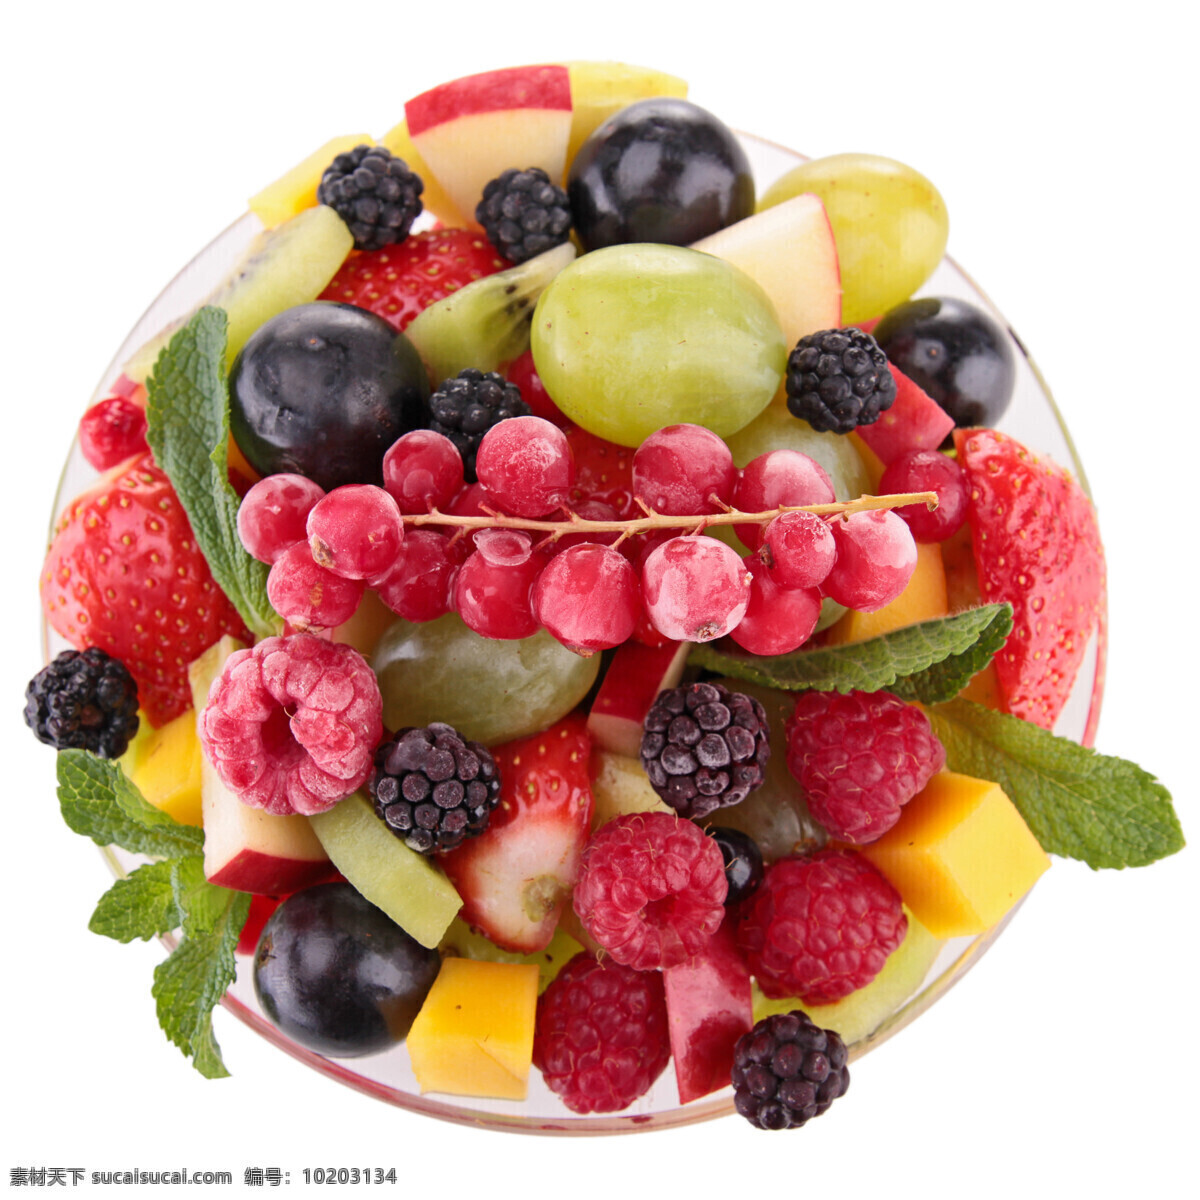 各种水果特写 水果 葡萄 红梅 草莓 水果蔬菜 餐饮美食 白色